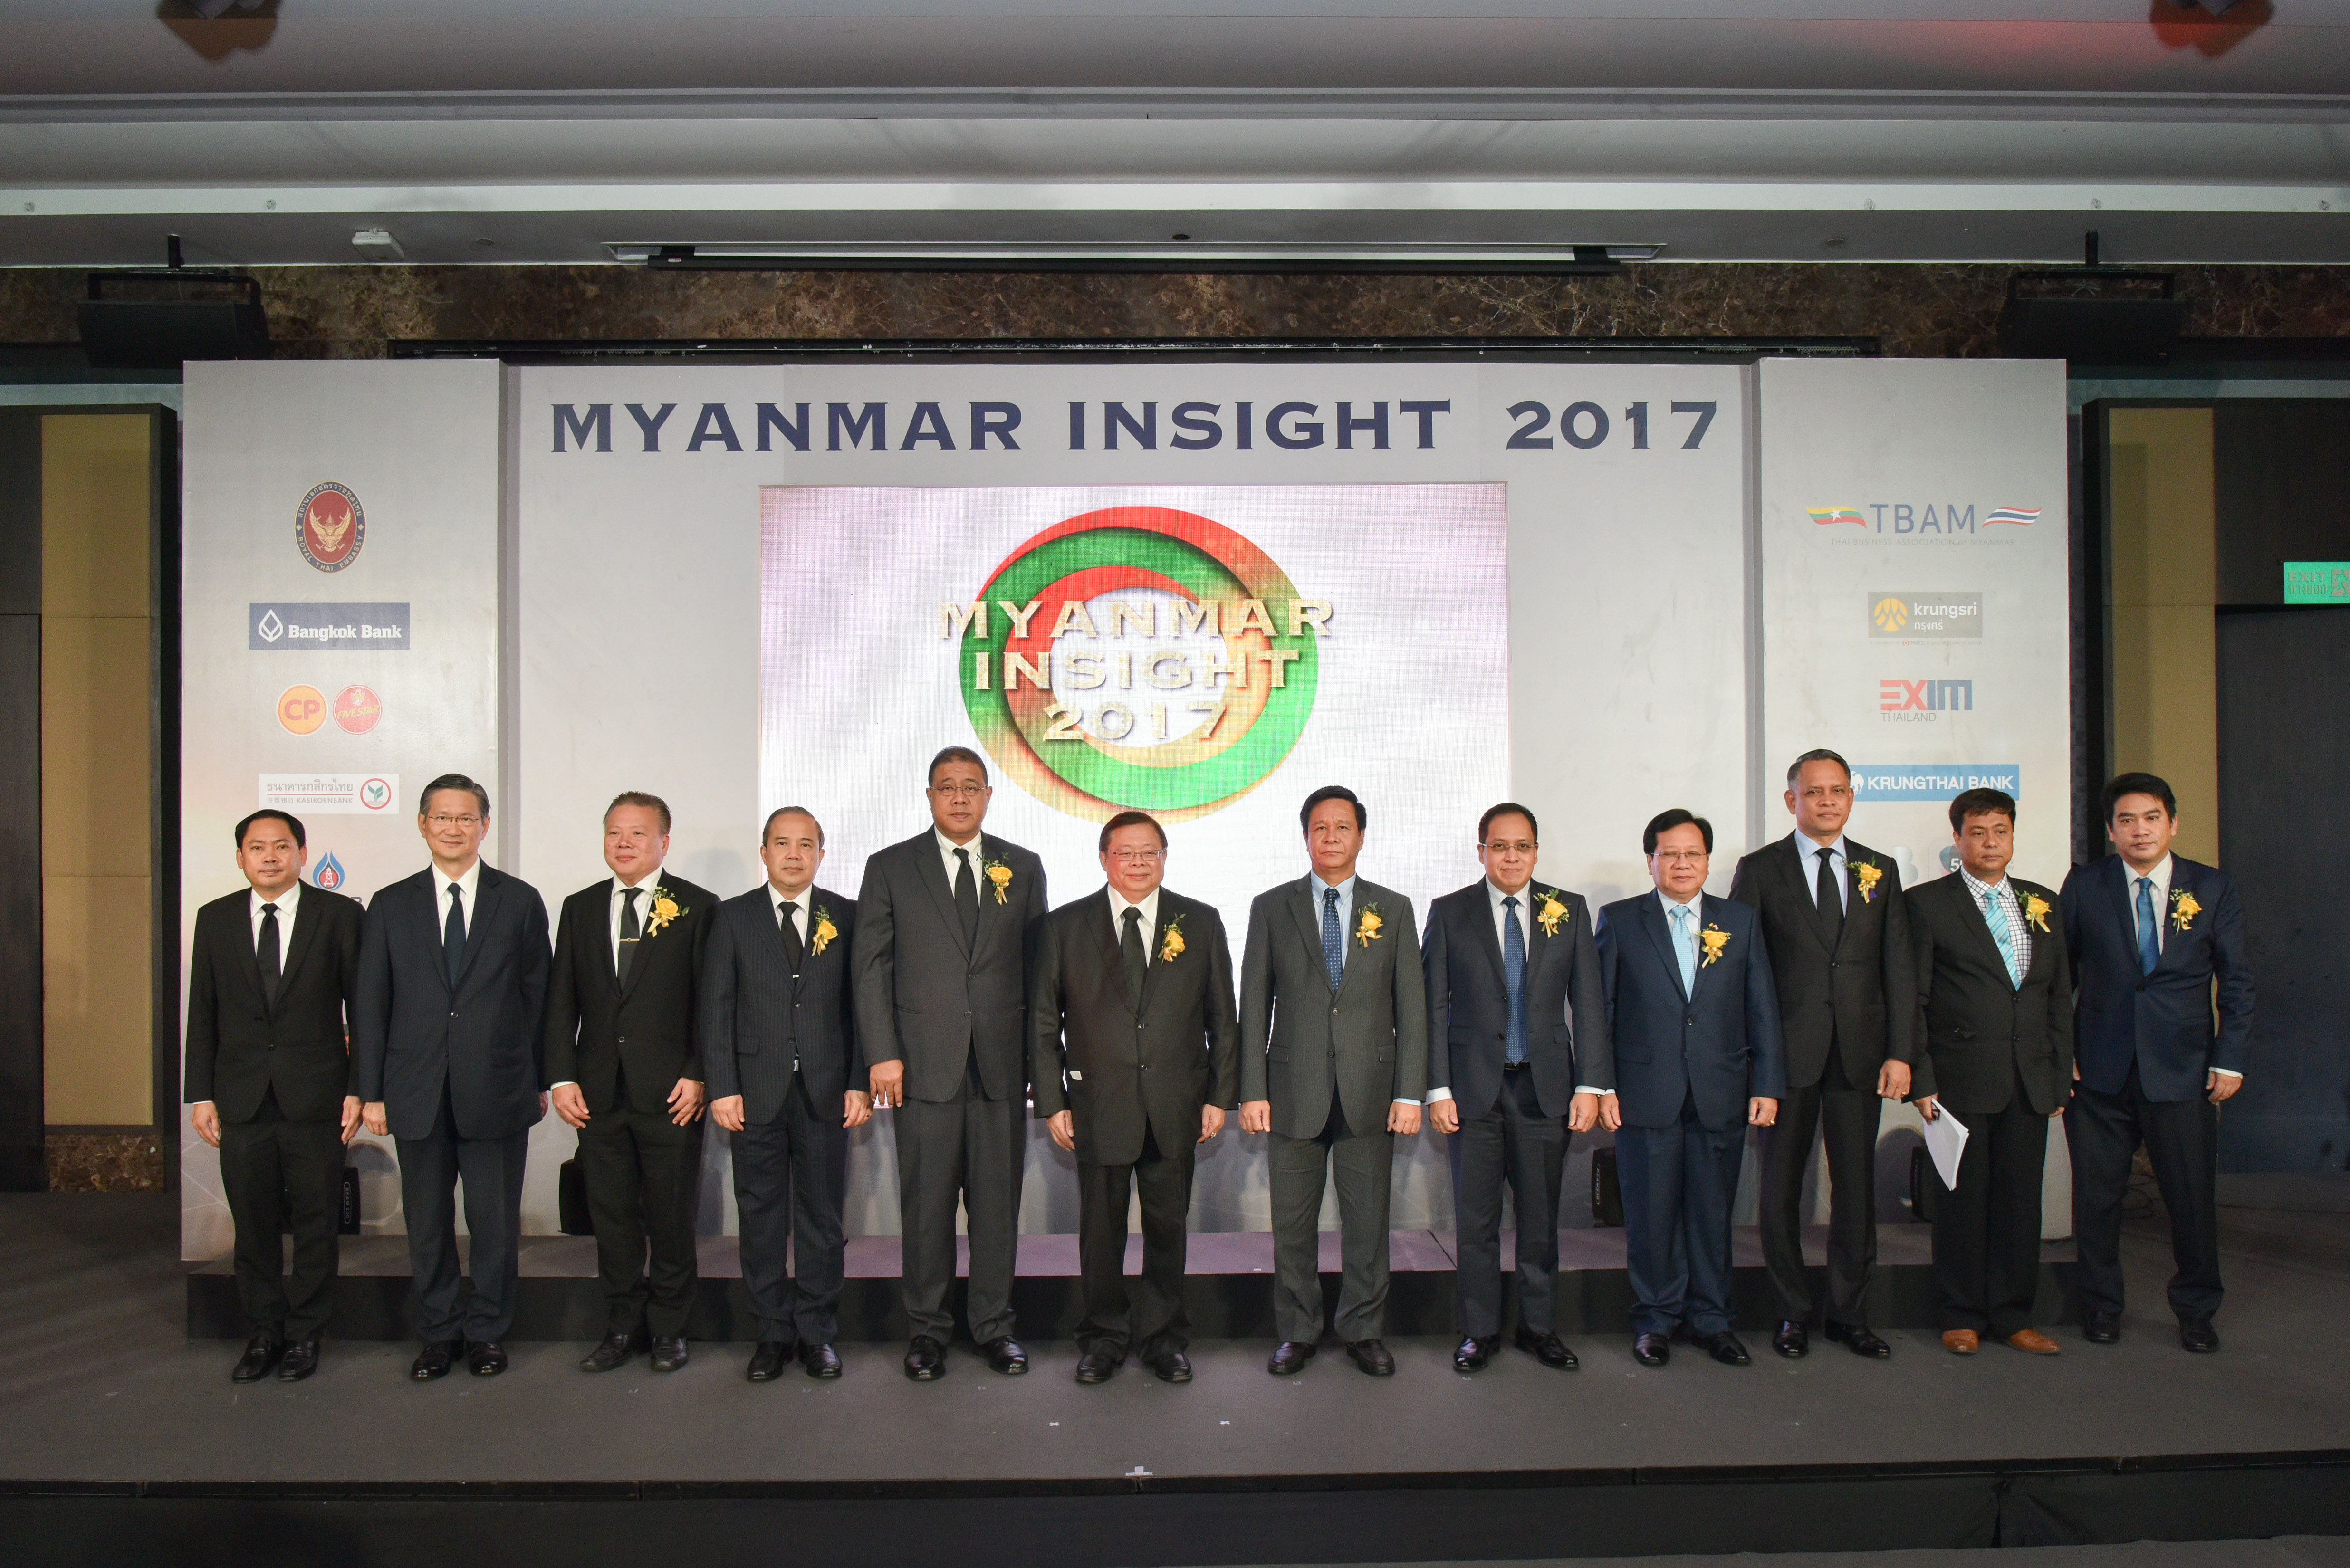 สถานเอกอัครราชทูต ณ กรุงย่างกุ้ง ร่วมกับสมาคมนักธุรกิจไทยในเมียนมา จัดงานสัมมนาด้านเศรษฐกิจ “Myanmar Insight 2017”